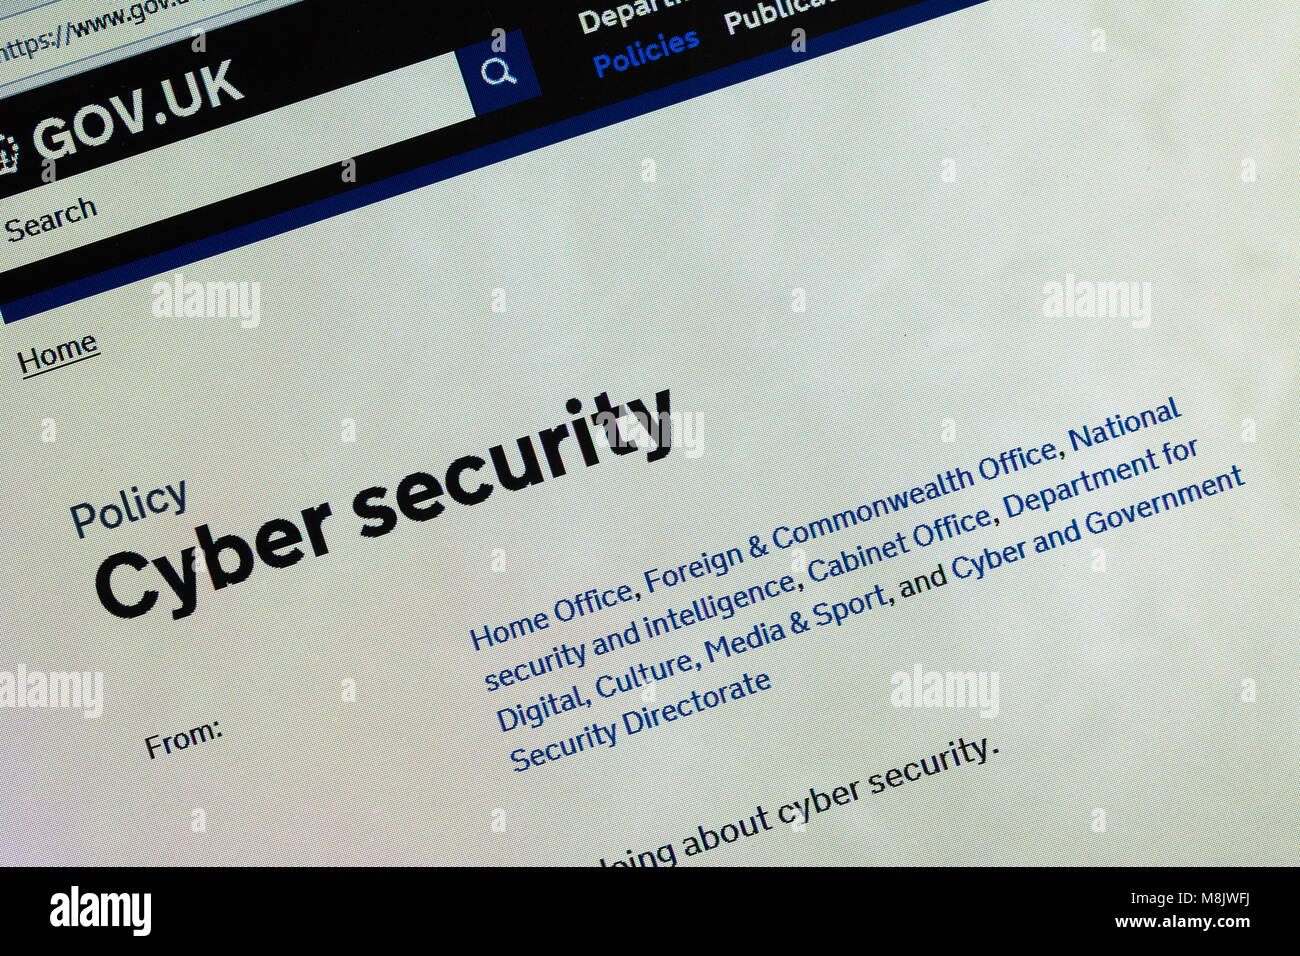 Capture d'écran de l'ordinateur affichant les informations à propos de la cybersécurité sur gov.uk website Banque D'Images